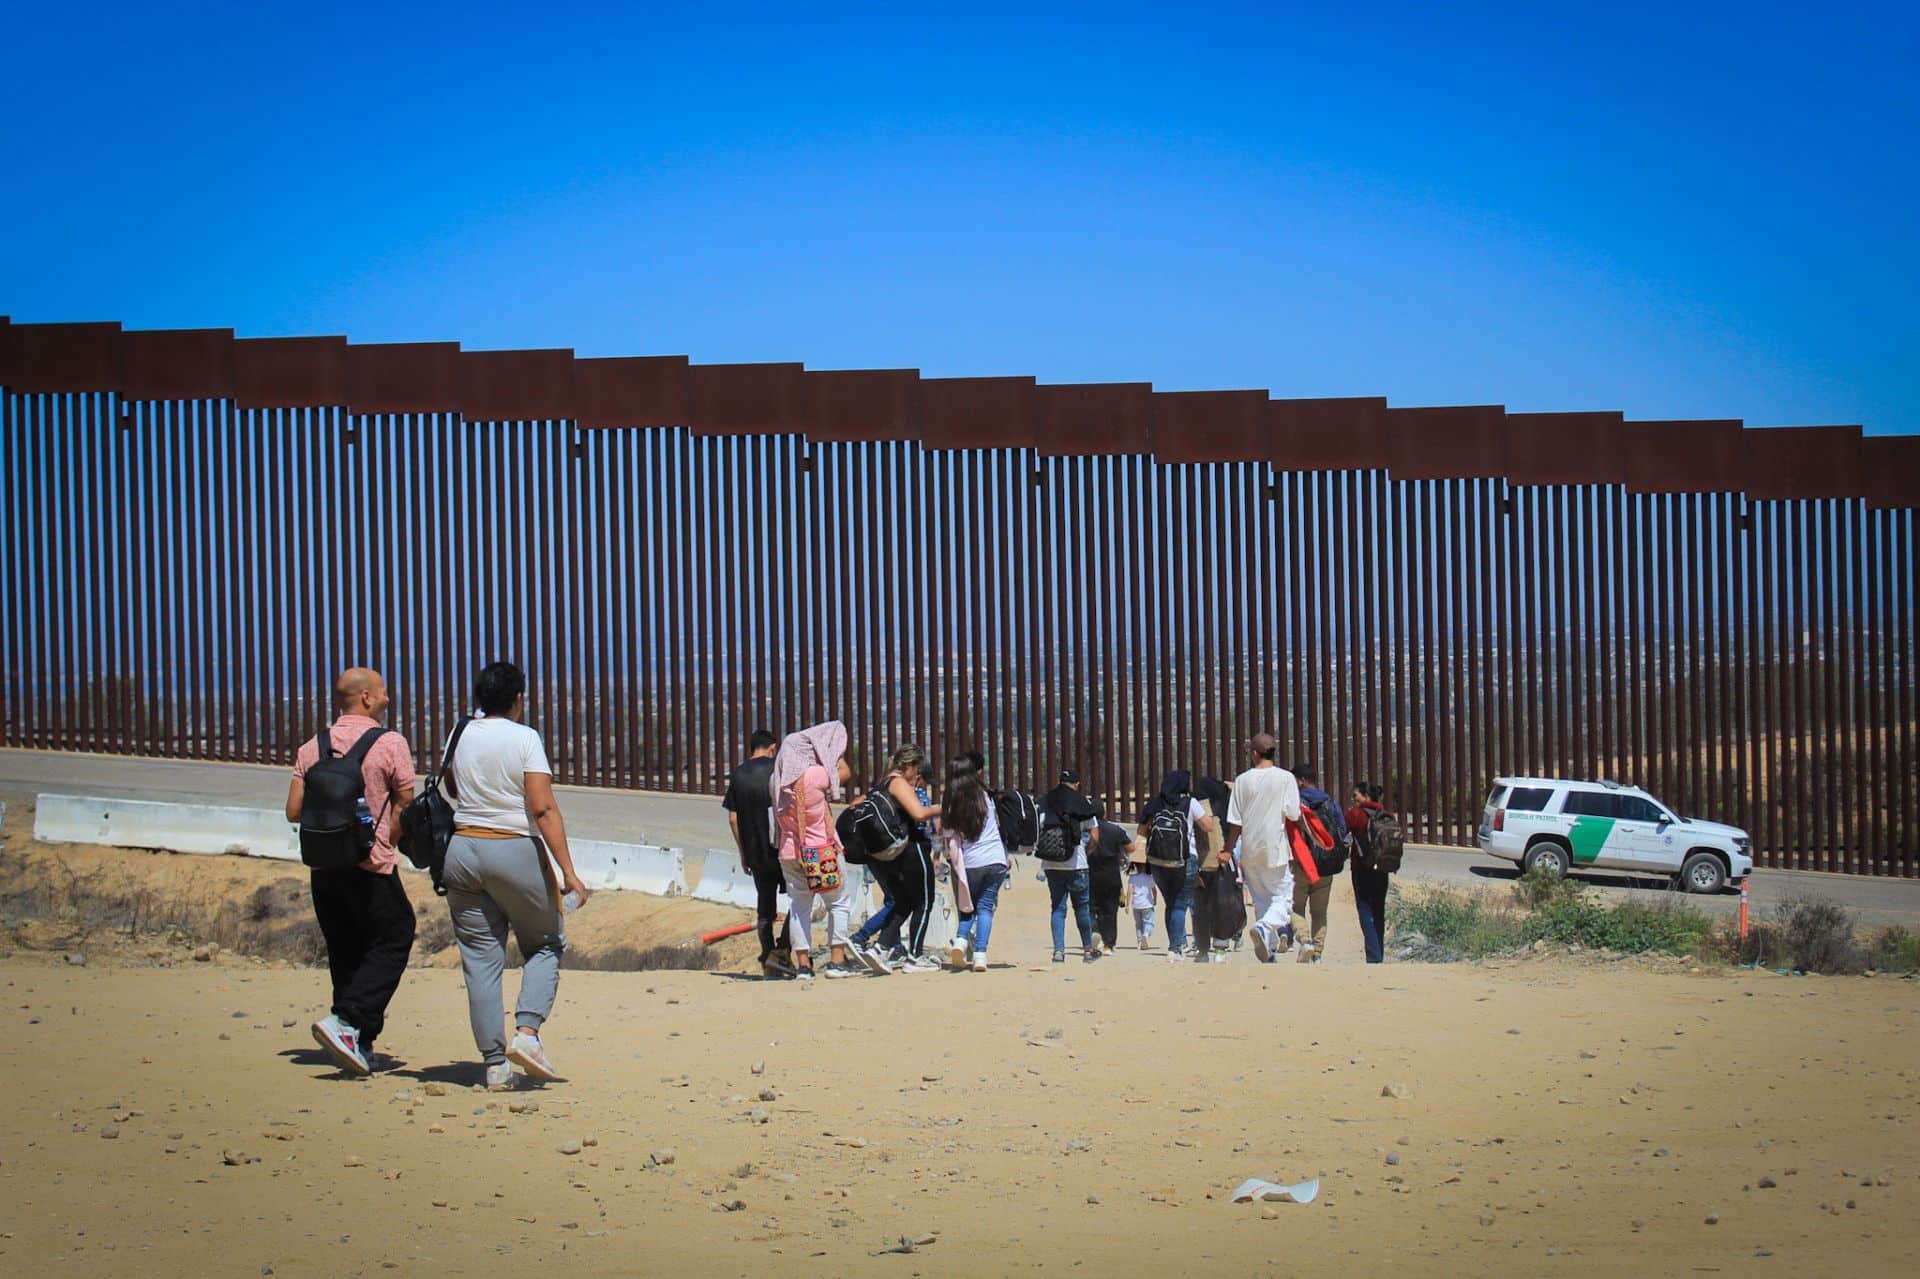 EUA aportará 240 mdd para asistencia humanitaria a migrantes